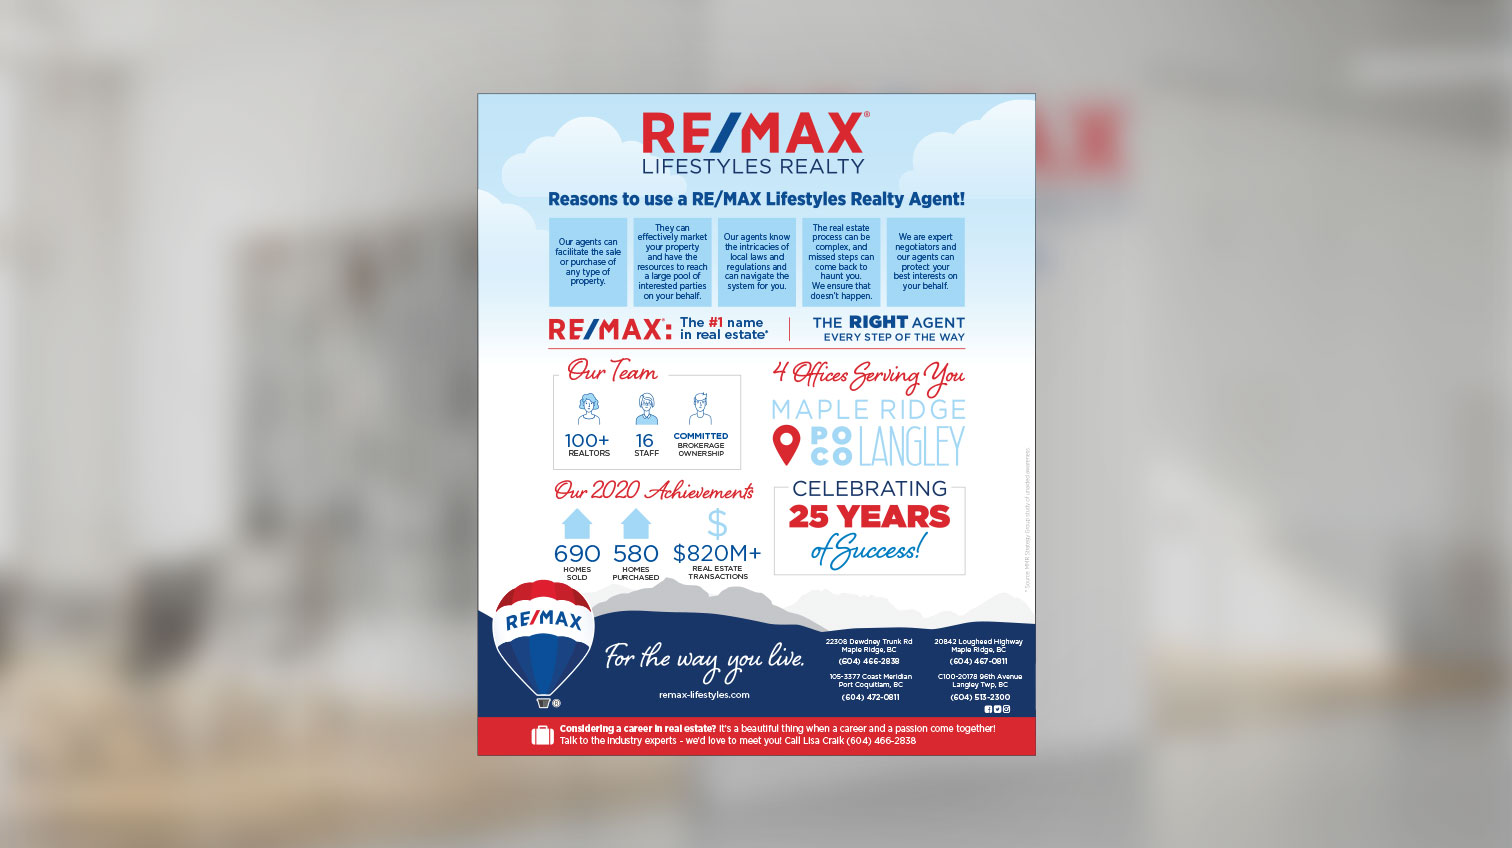 Re/max ad 